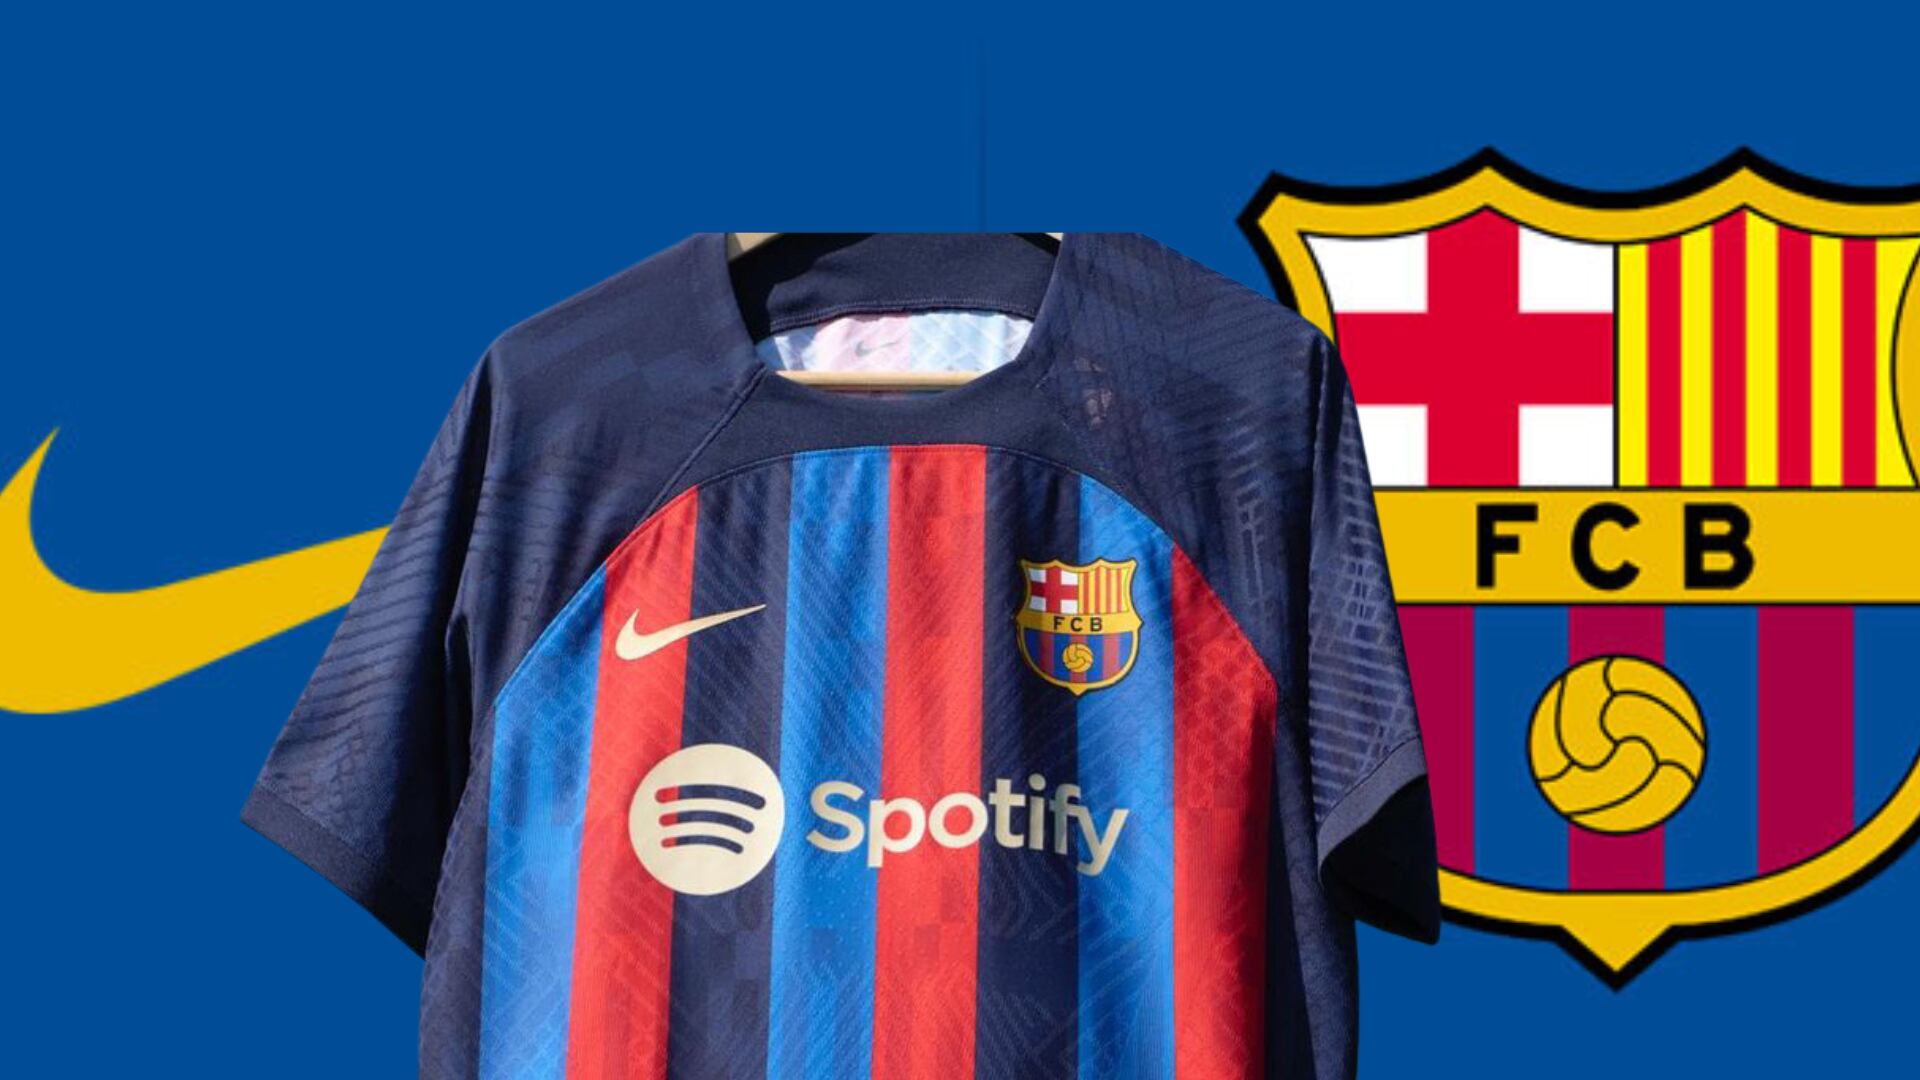 Mientras Laporta negocia con Puma, la camiseta especial que Nike anunció para Barça